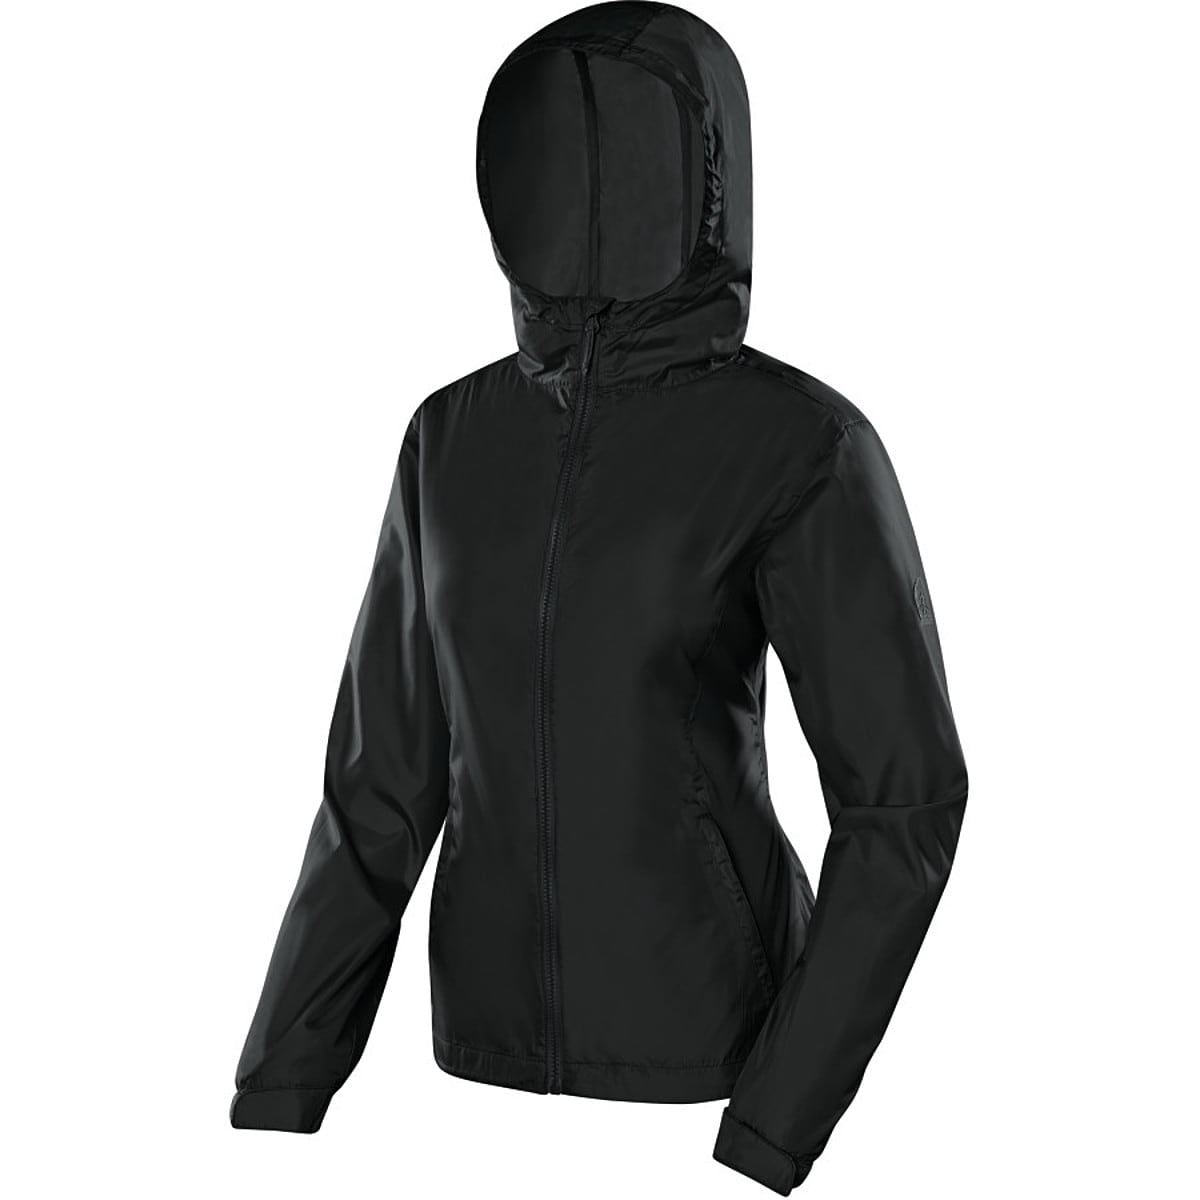 Sierra Designs Microlight 2 Jacket - Women's - Clothing